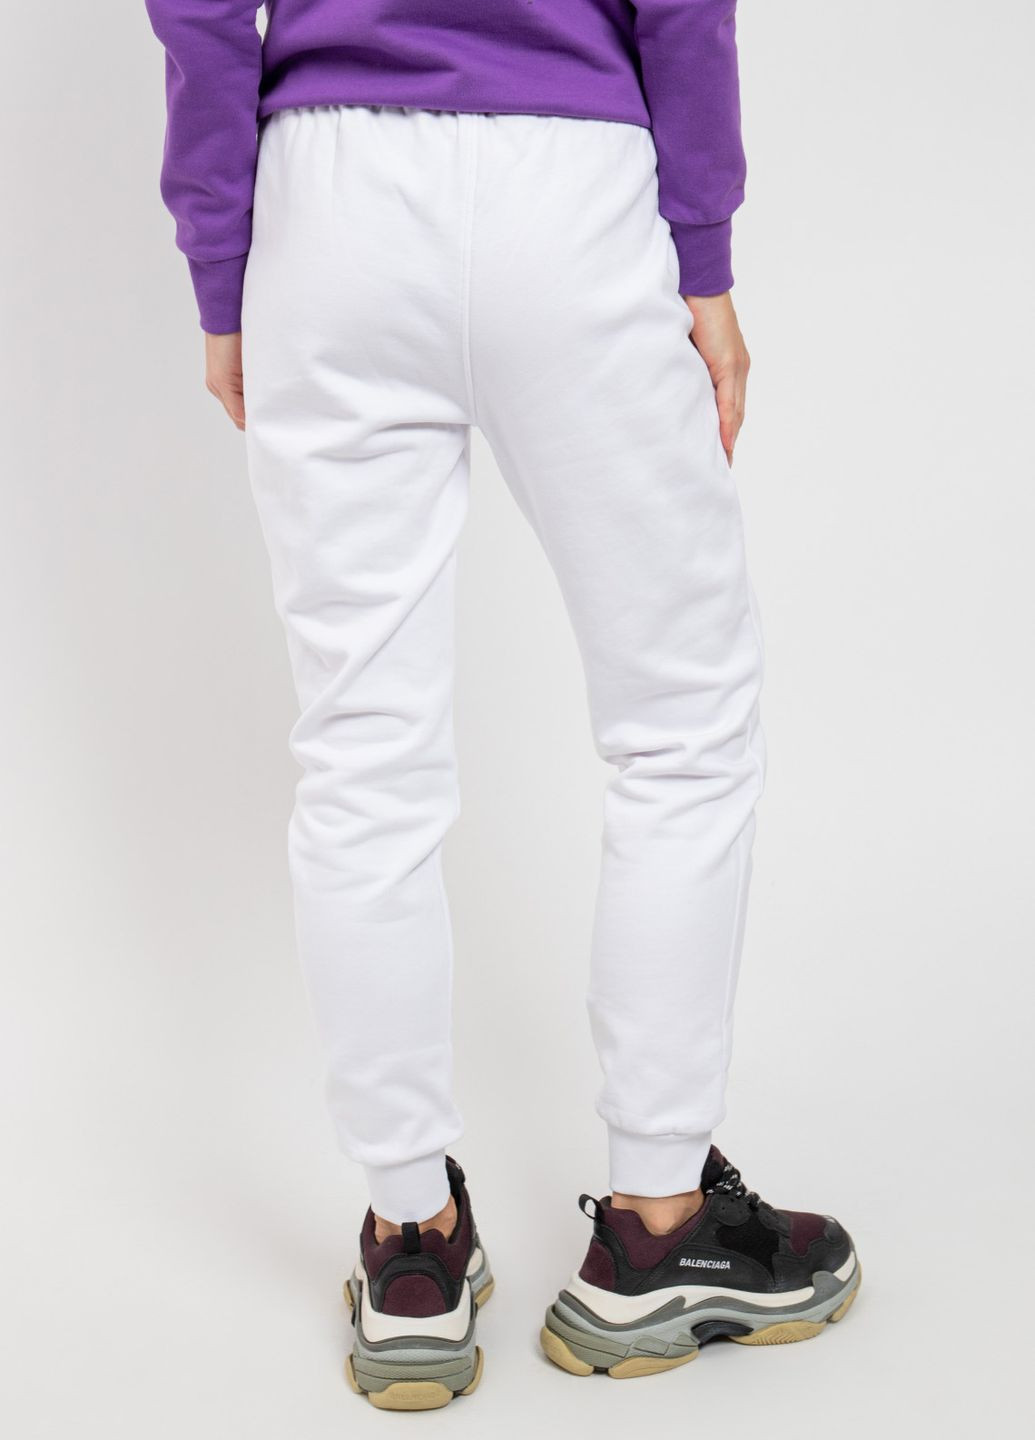 Белые спортивные демисезонные брюки Supreme Grip